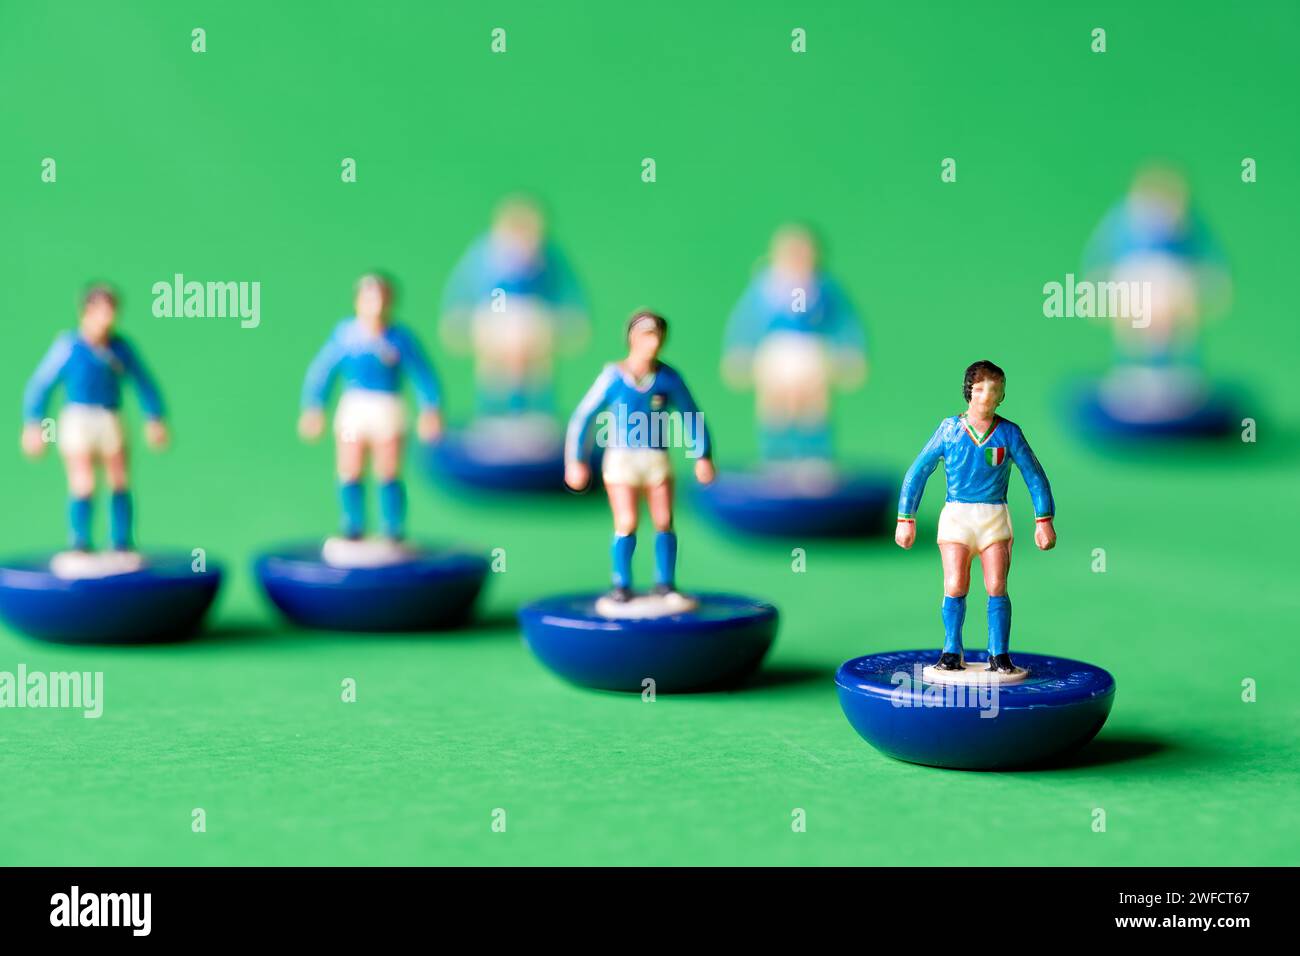 Un groupe de figurines miniatures Subbuteo peintes dans les couleurs de l'équipe nationale d'Italie de maillot bleu et short blanc. Subbuteo est un jeu de football de table Banque D'Images